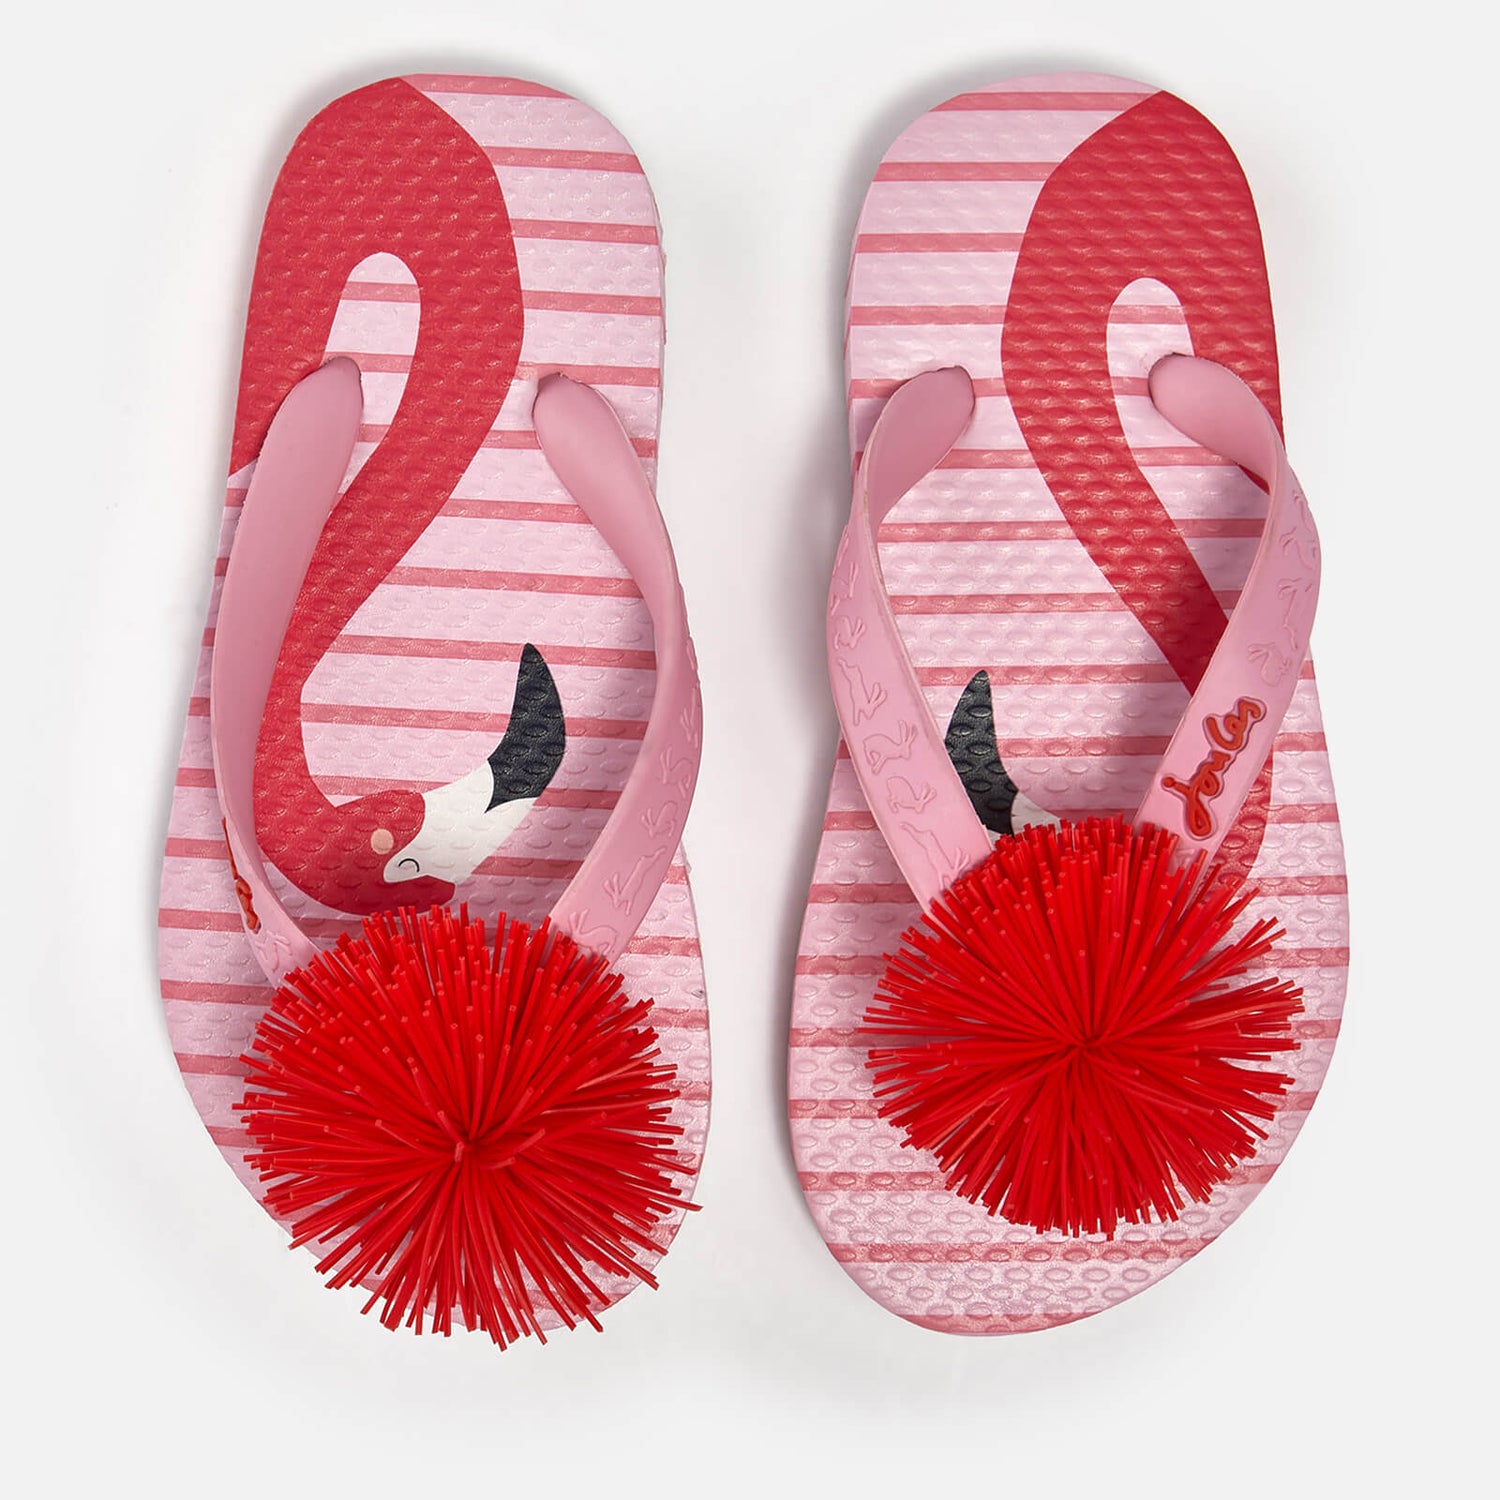 Joules Kids' Lightweight Summer Sandals - Pink Flamingo